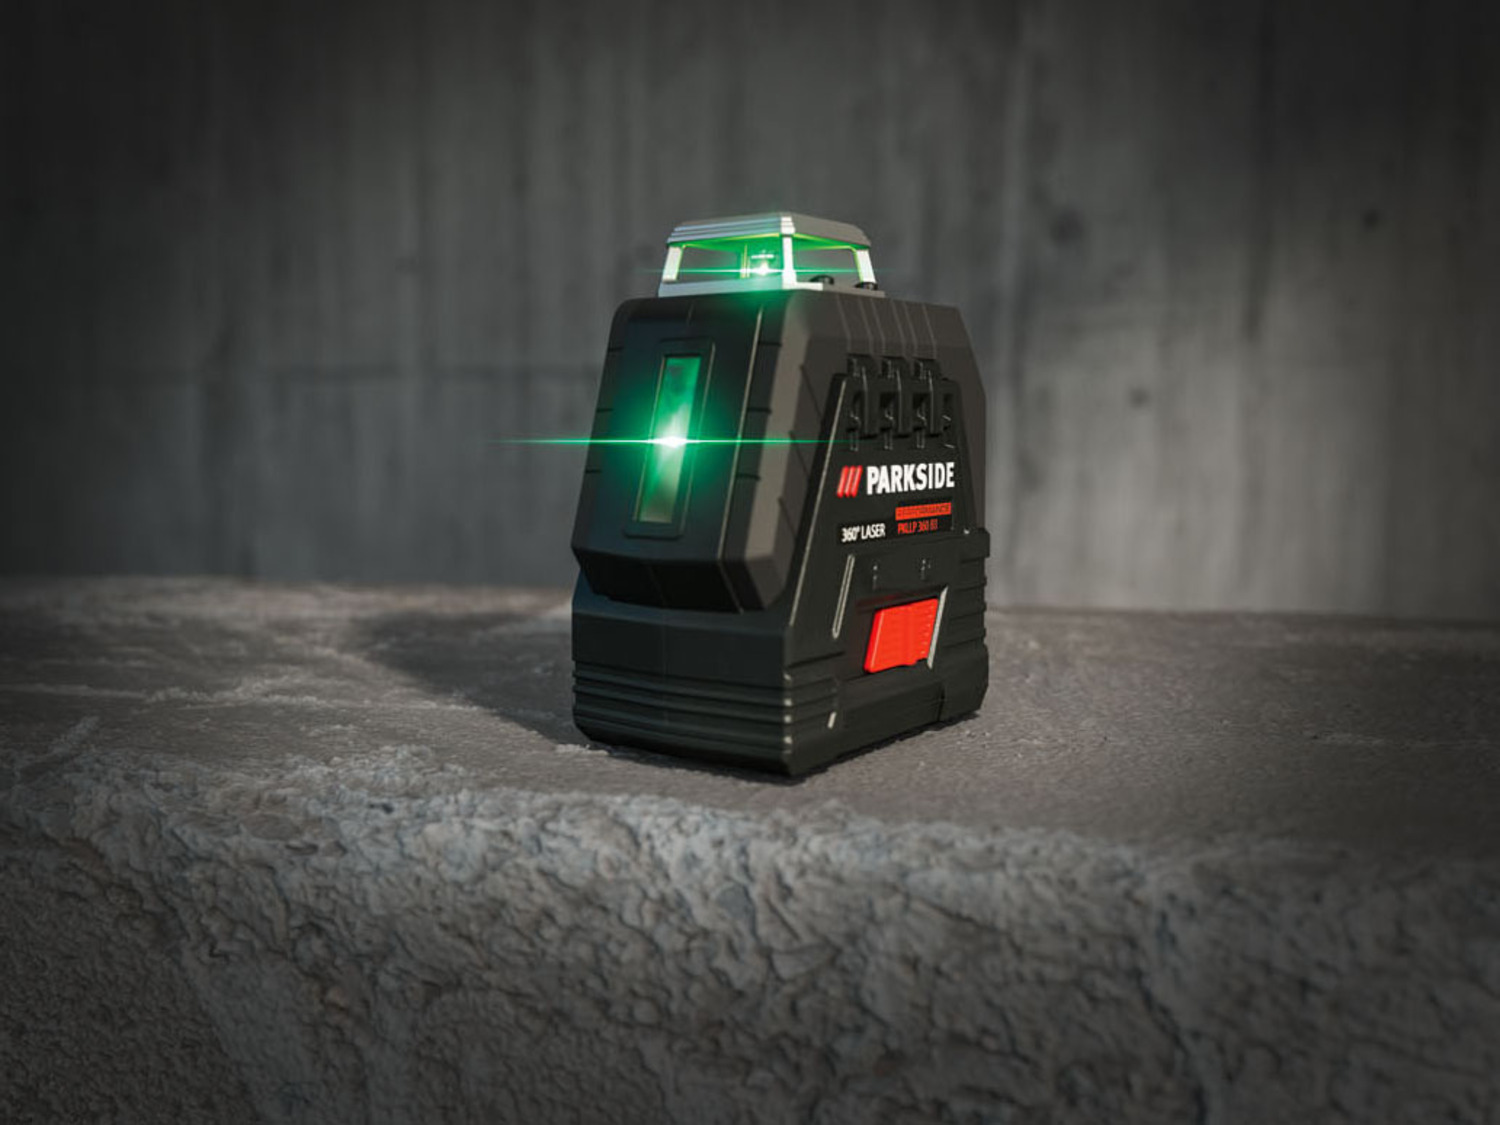 Huepar Niveau Laser Vert à 2 x 360 avec Batterie Li-ion - Autres indus 